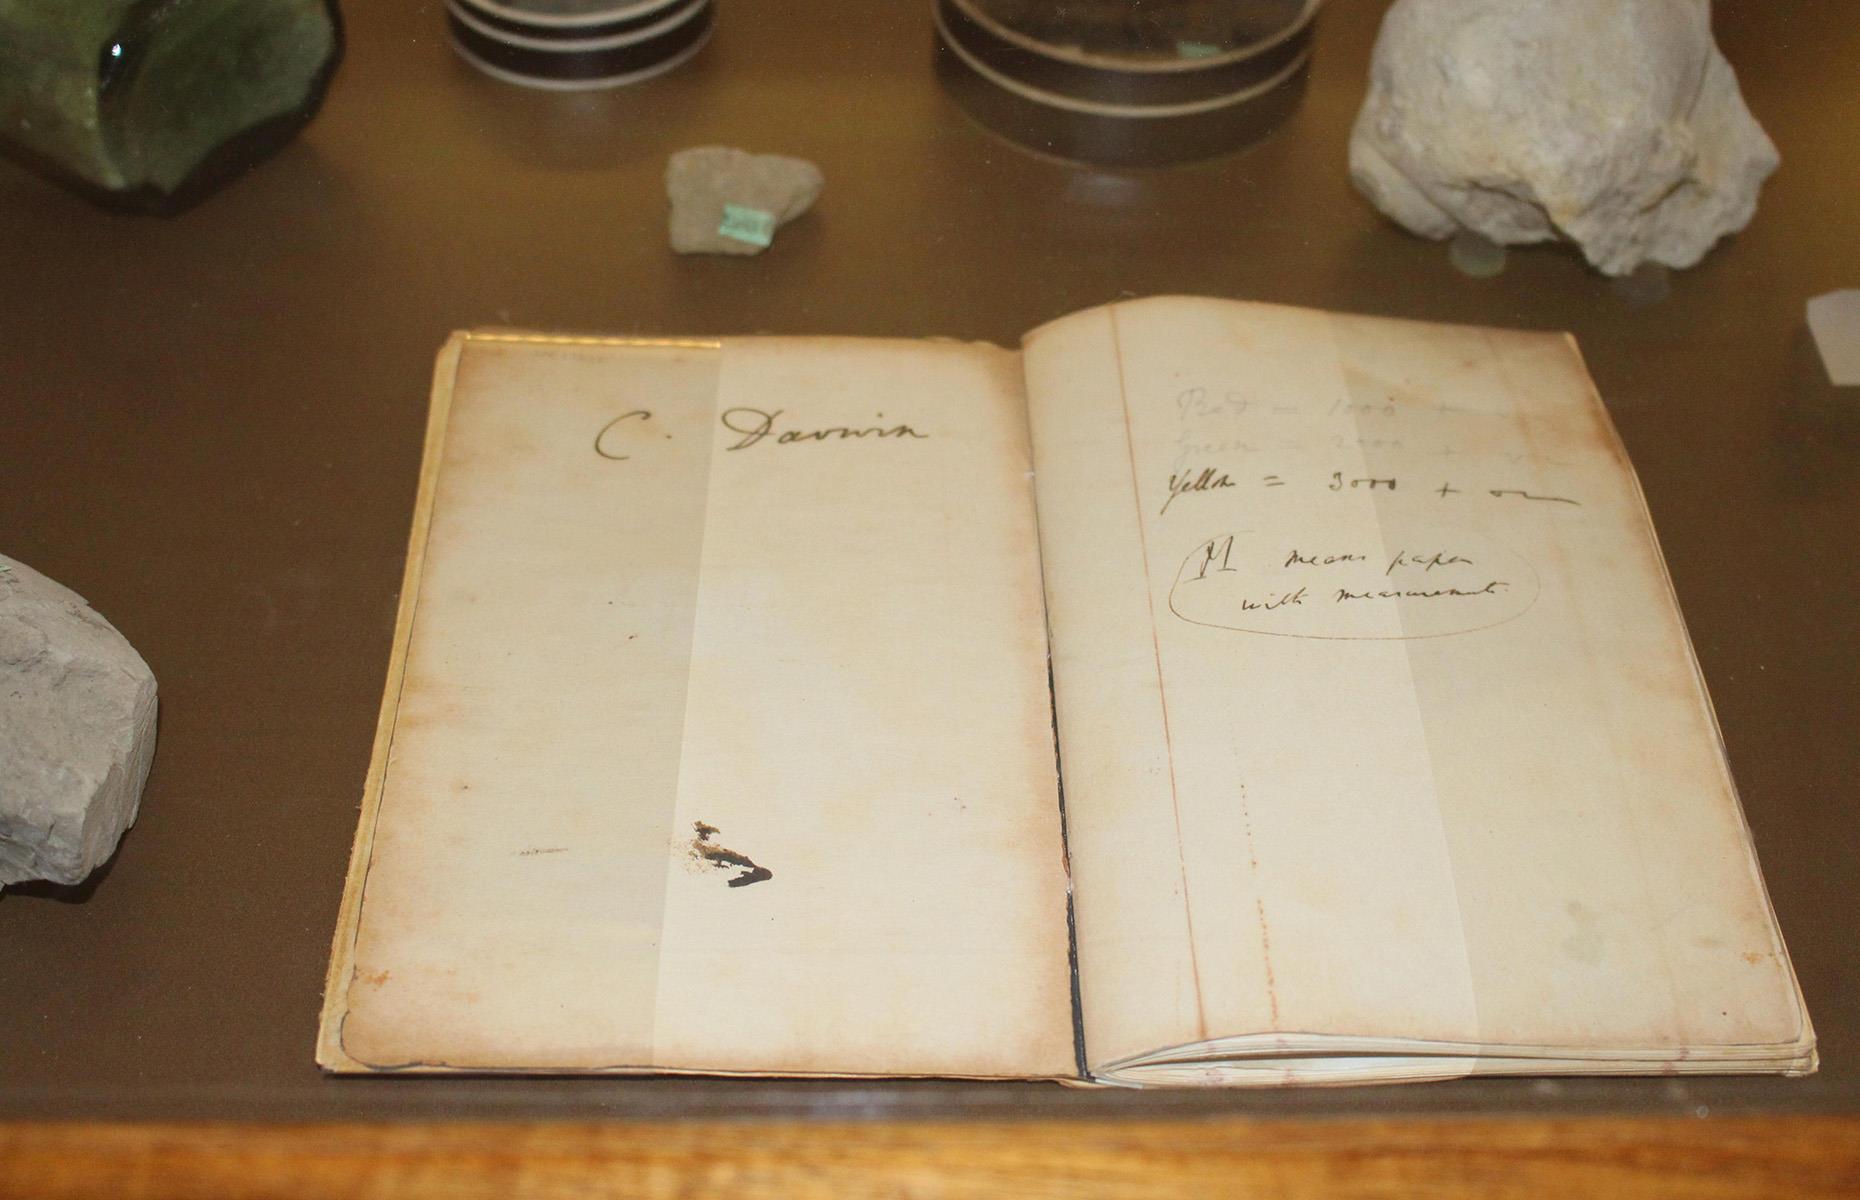 Charles Darwin's notebooks